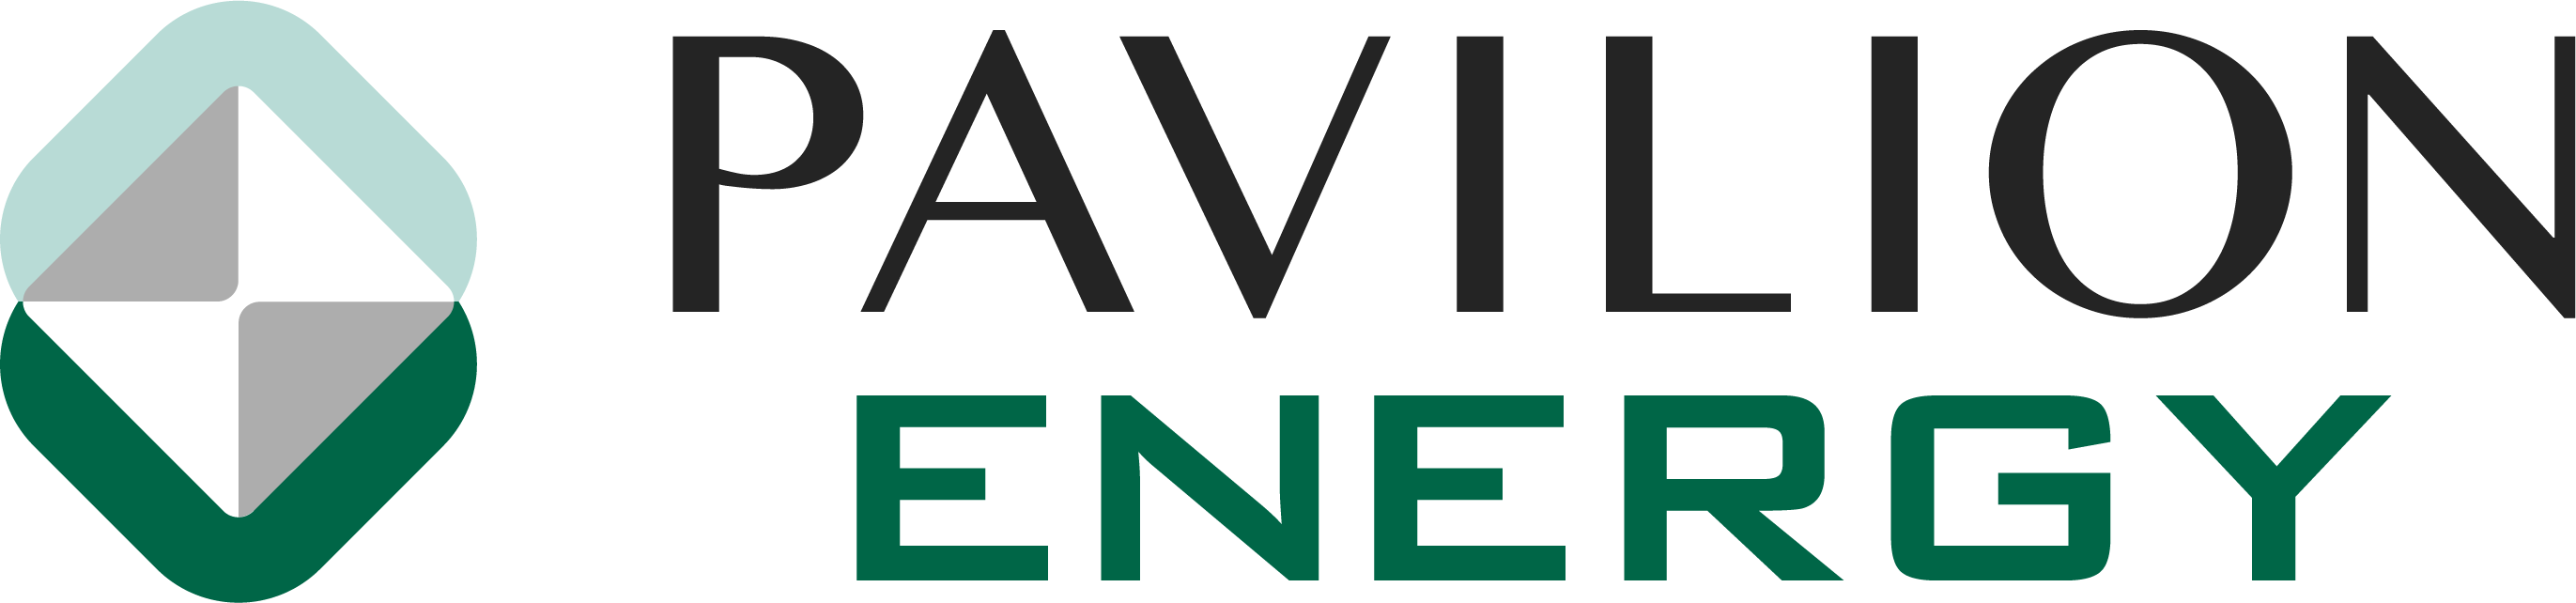 Logo Pavilion Energy